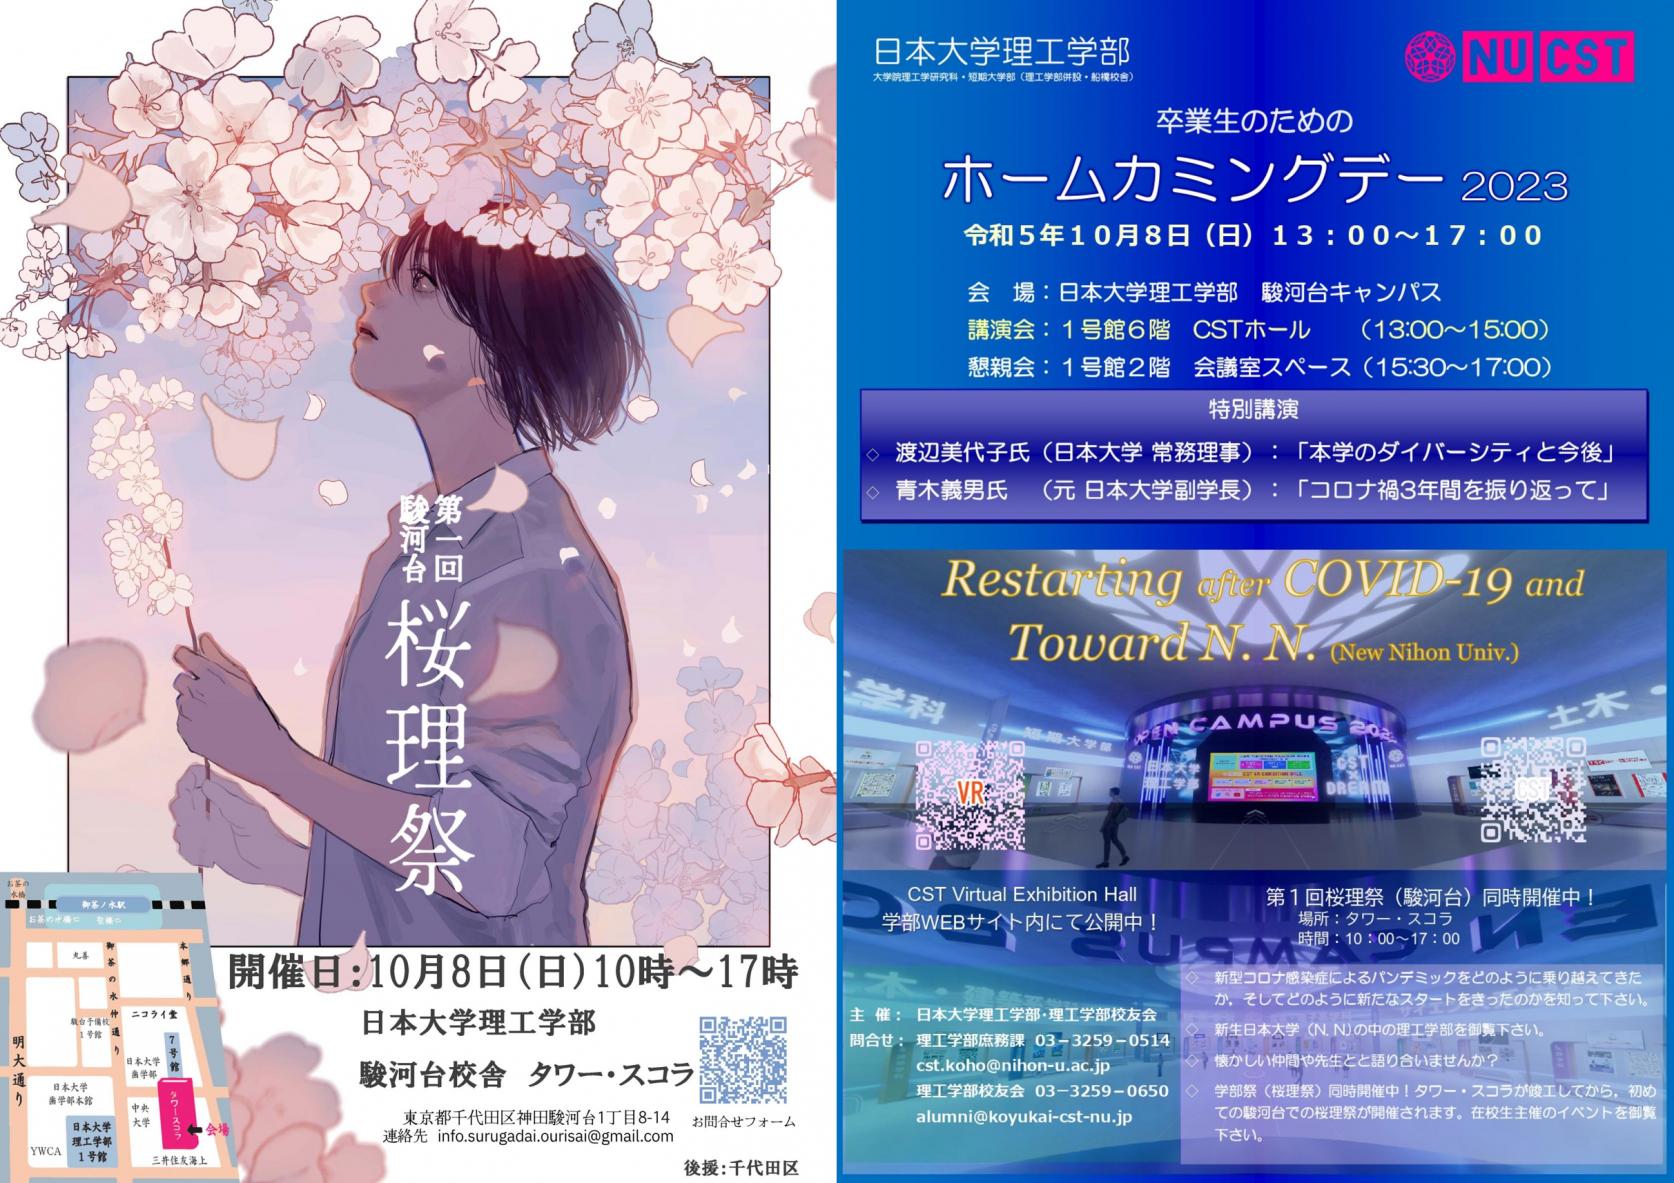 【本日10月8日(日)開催】駿河台桜理祭×ホームカミングデー2023